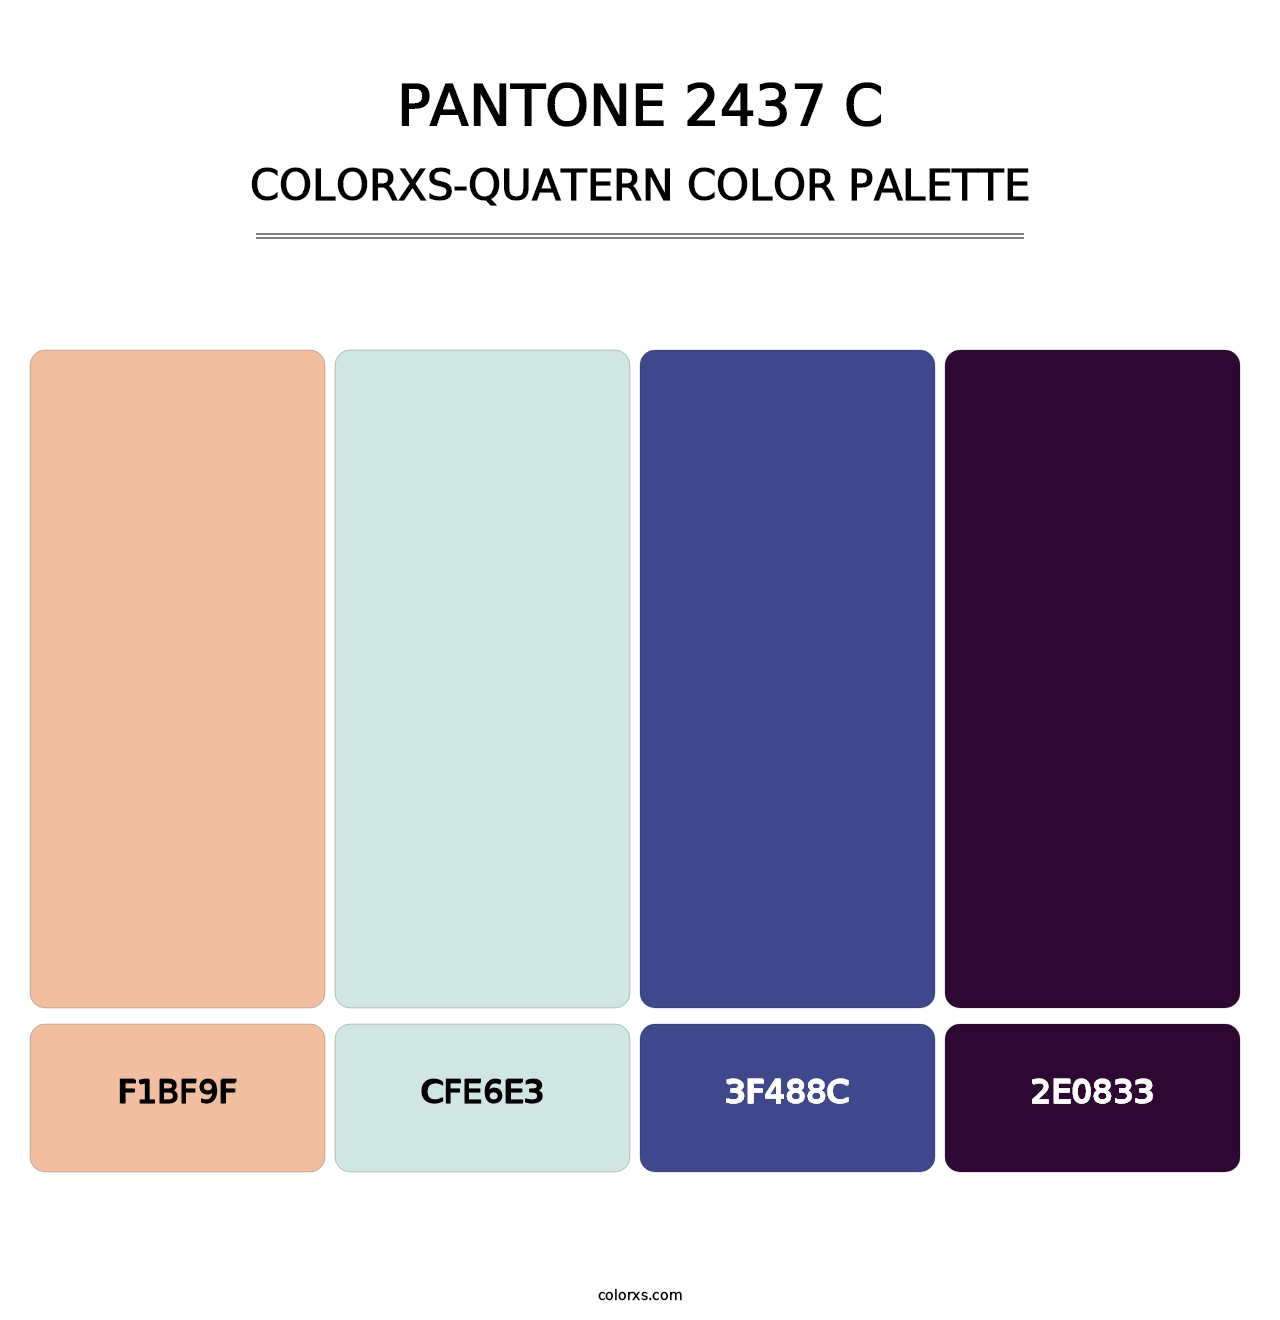 PANTONE 2437 C - Colorxs Quatern Palette